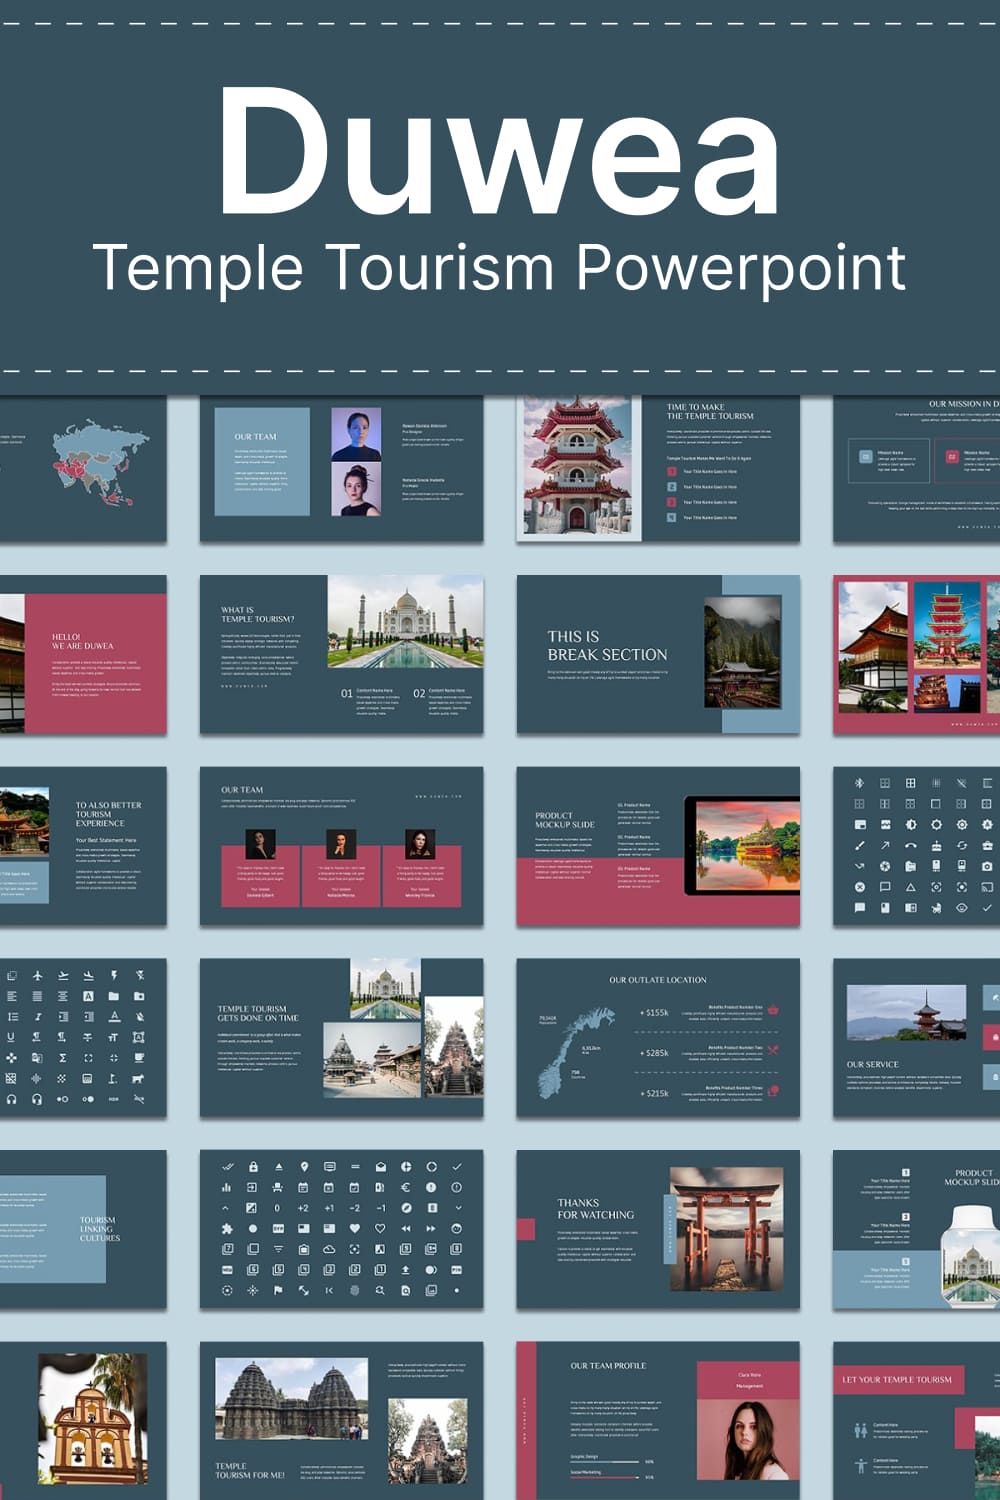 duwea temple tourism powerpoint 03